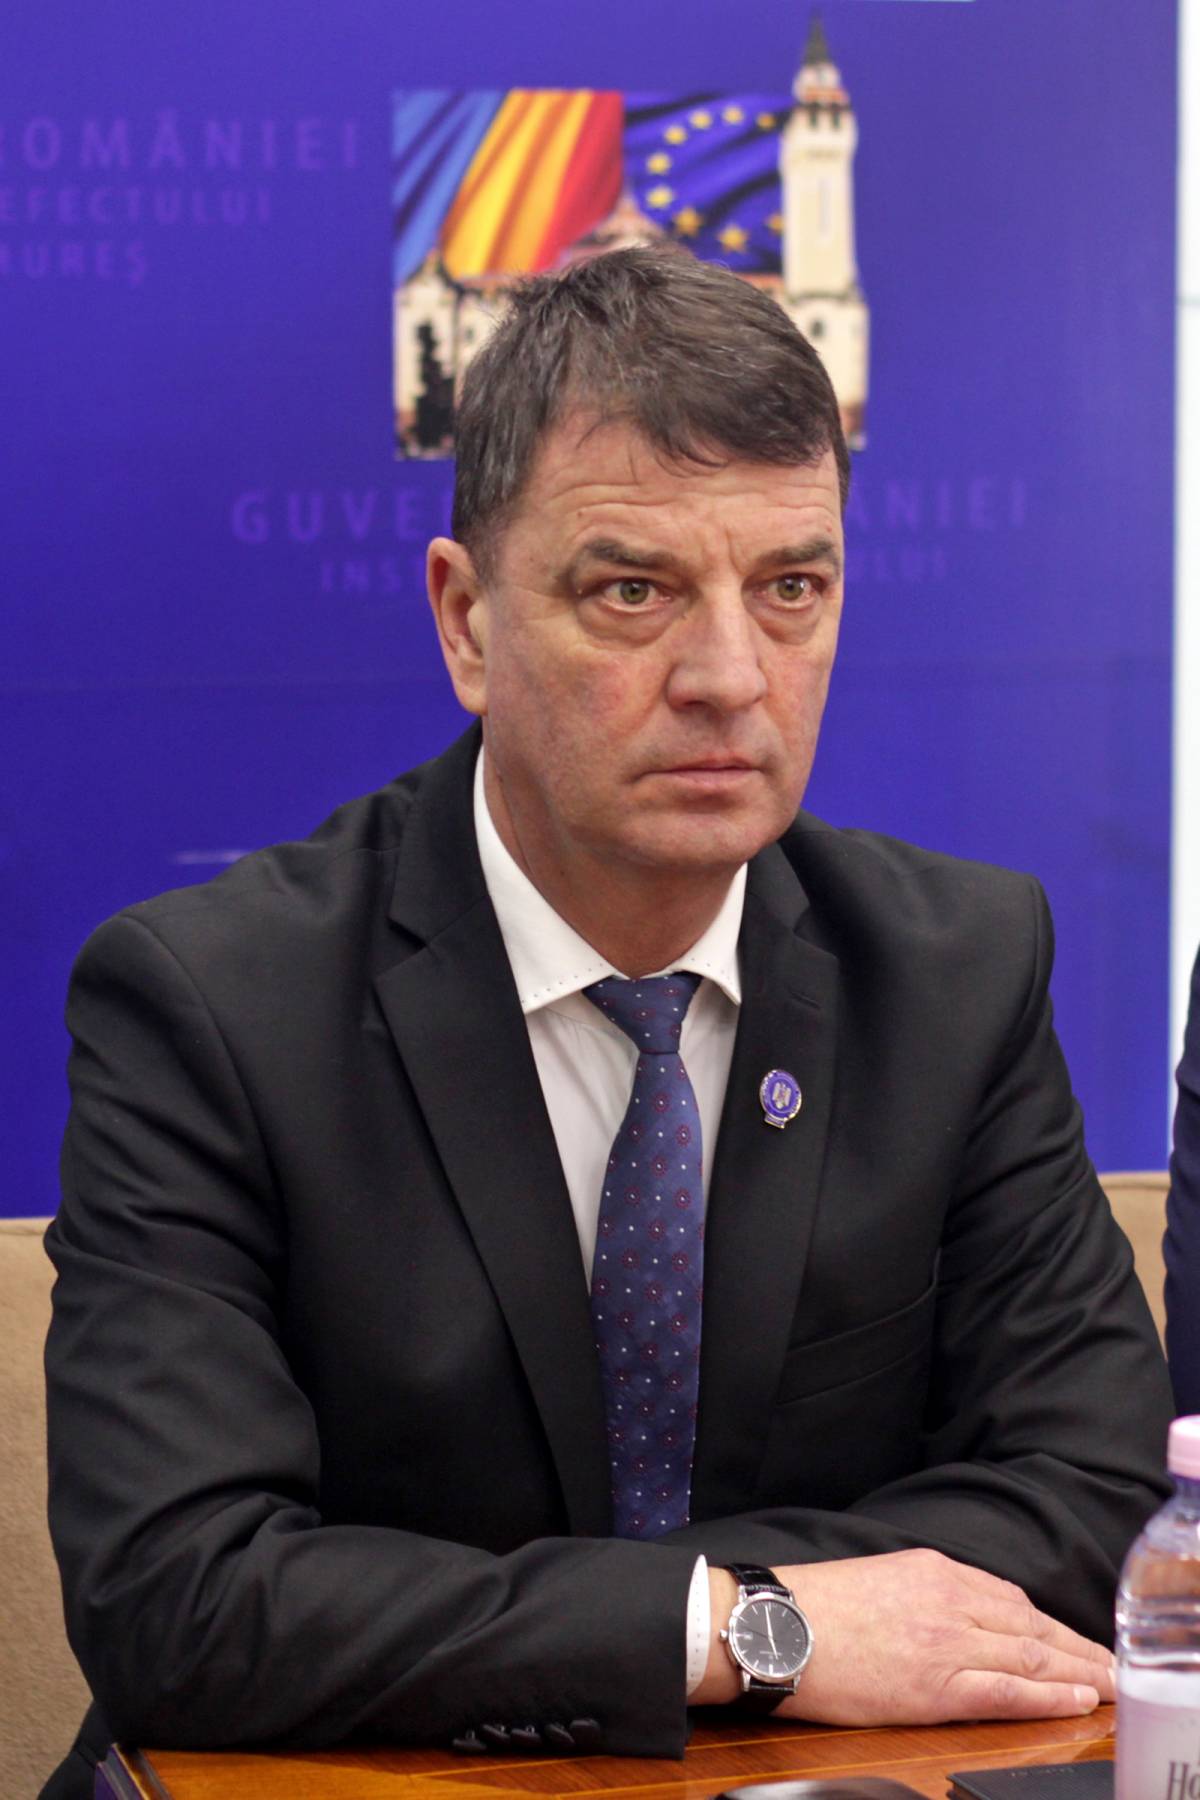 Leváltják Lucian Gogát a Maros megyei prefektúra éléről, Sorin Lazăr lesz az új prefektus